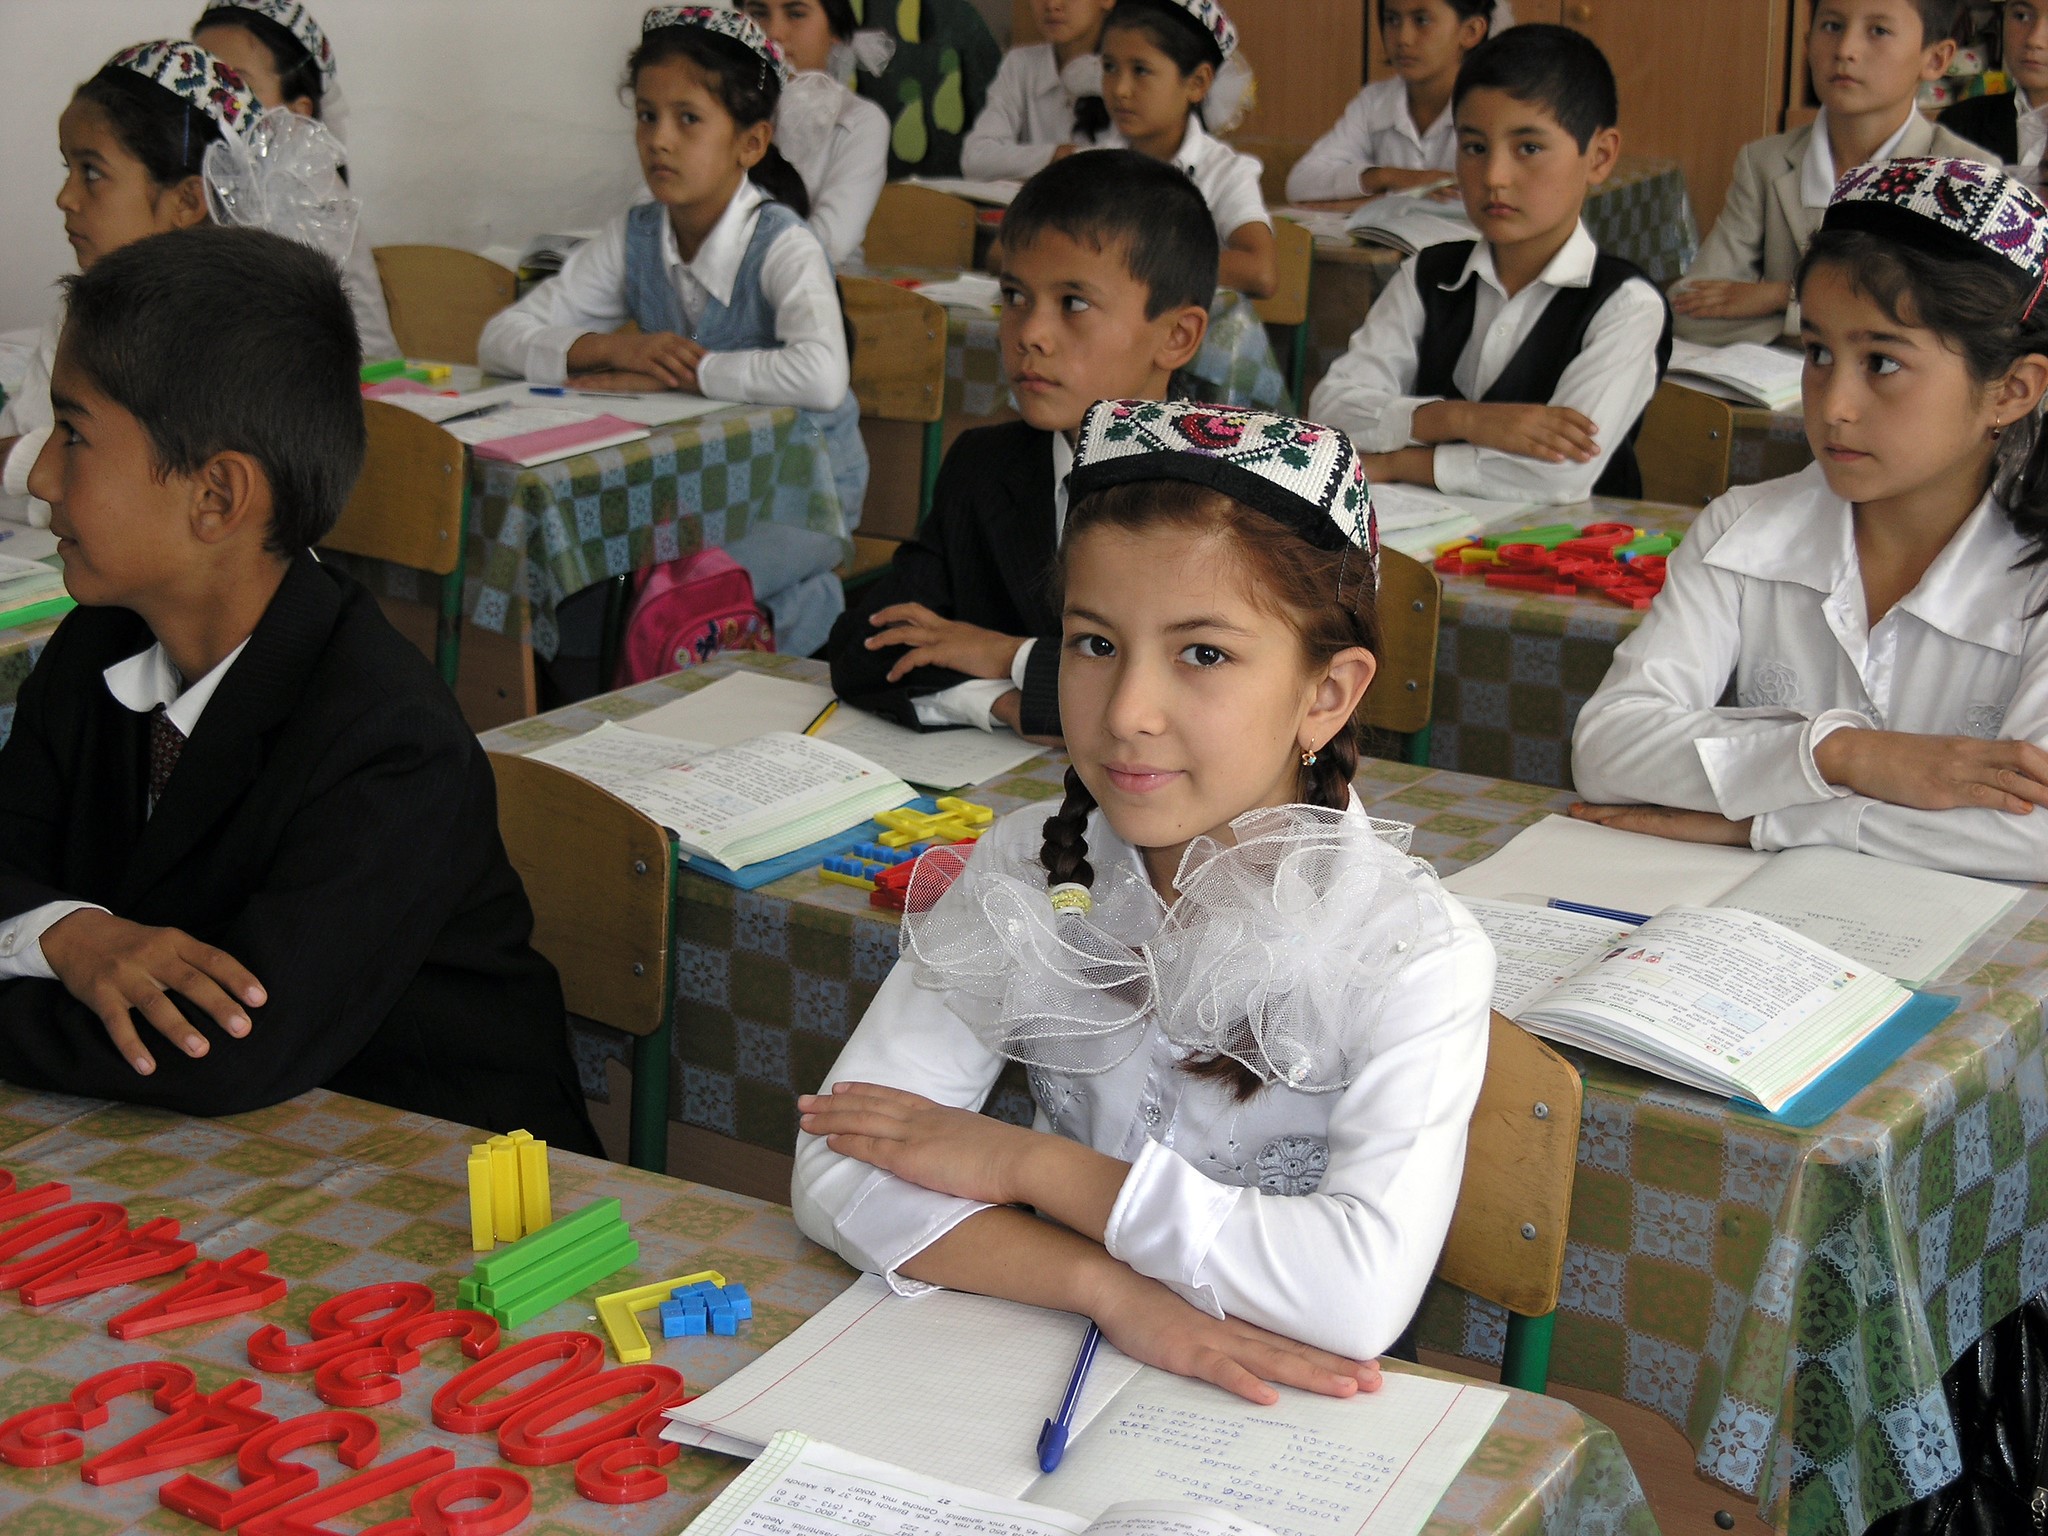 education in turkmenistan ppt